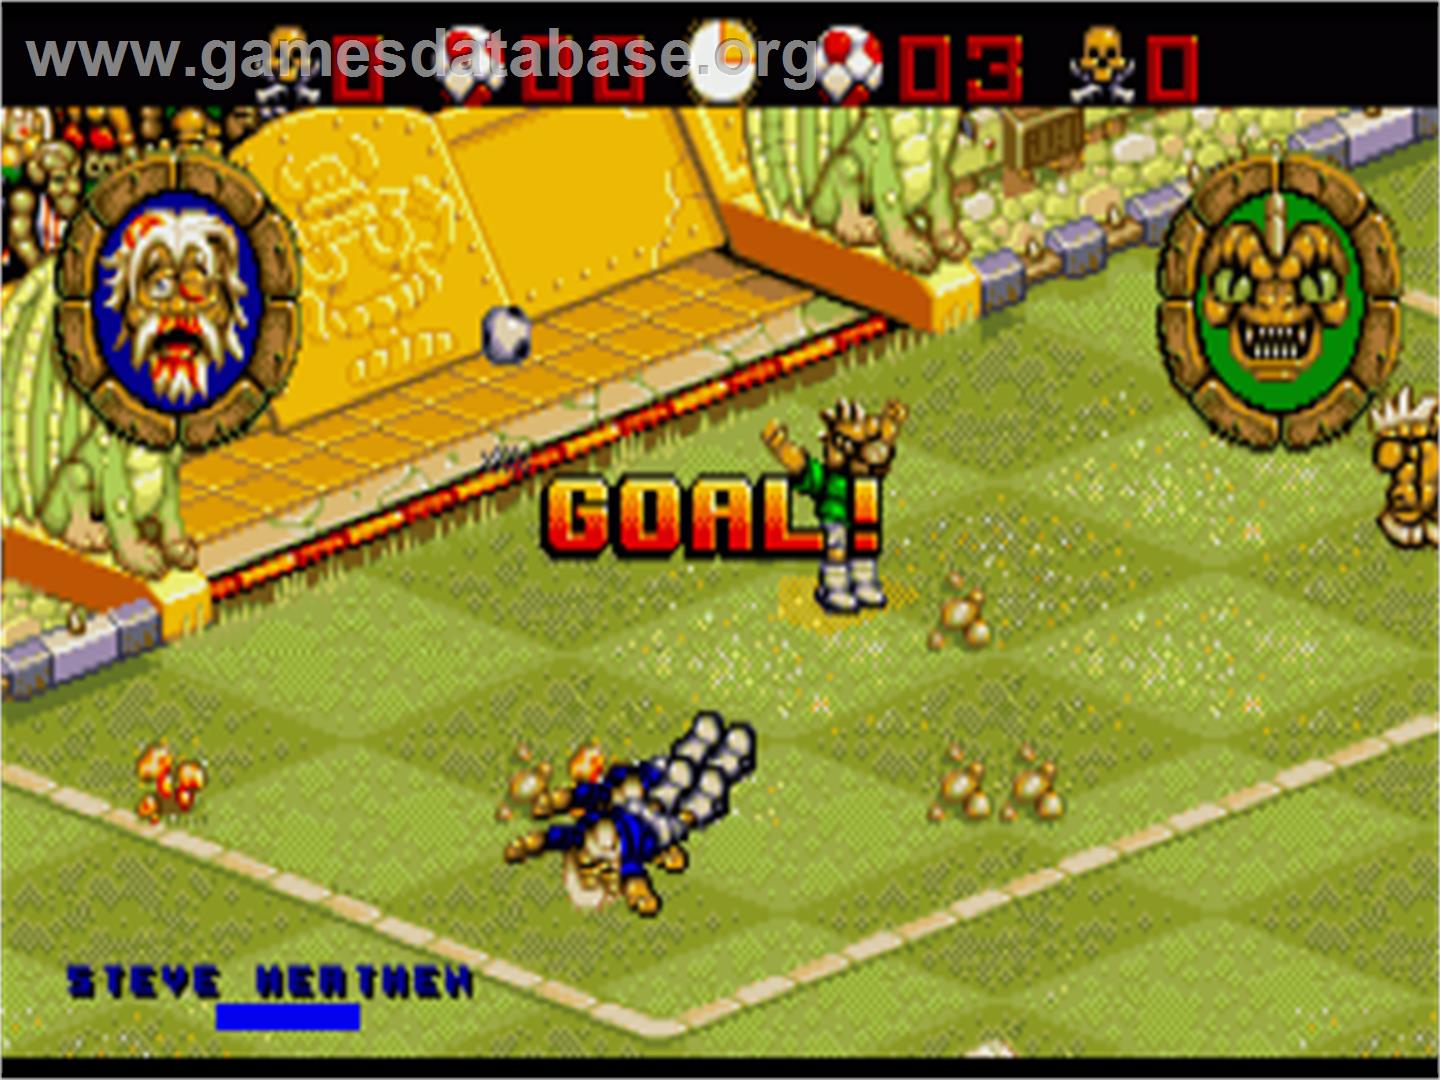 Wild Cup Soccer - Commodore Amiga - Artwork - In Game